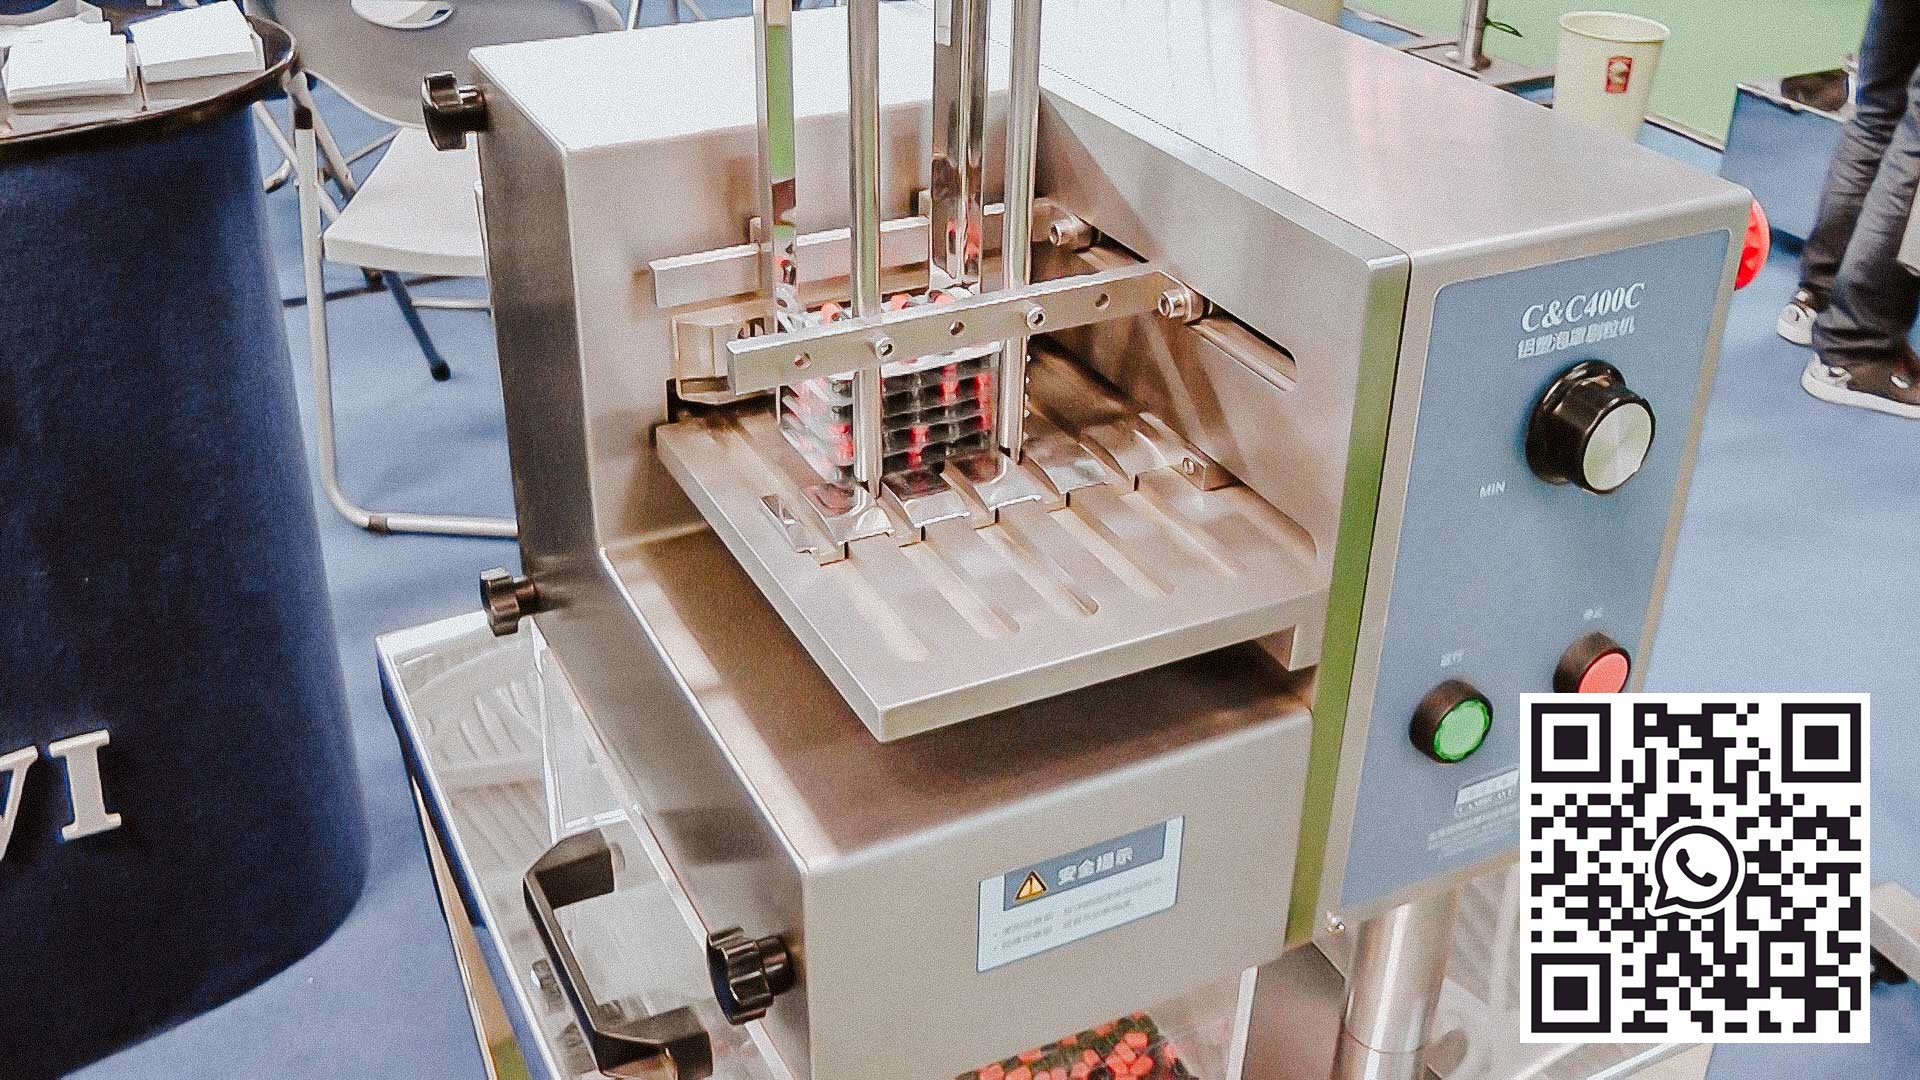 Automatyczny sprzęt do wyjmowania i czyszczenia kapsułek żelatynowych z blistra